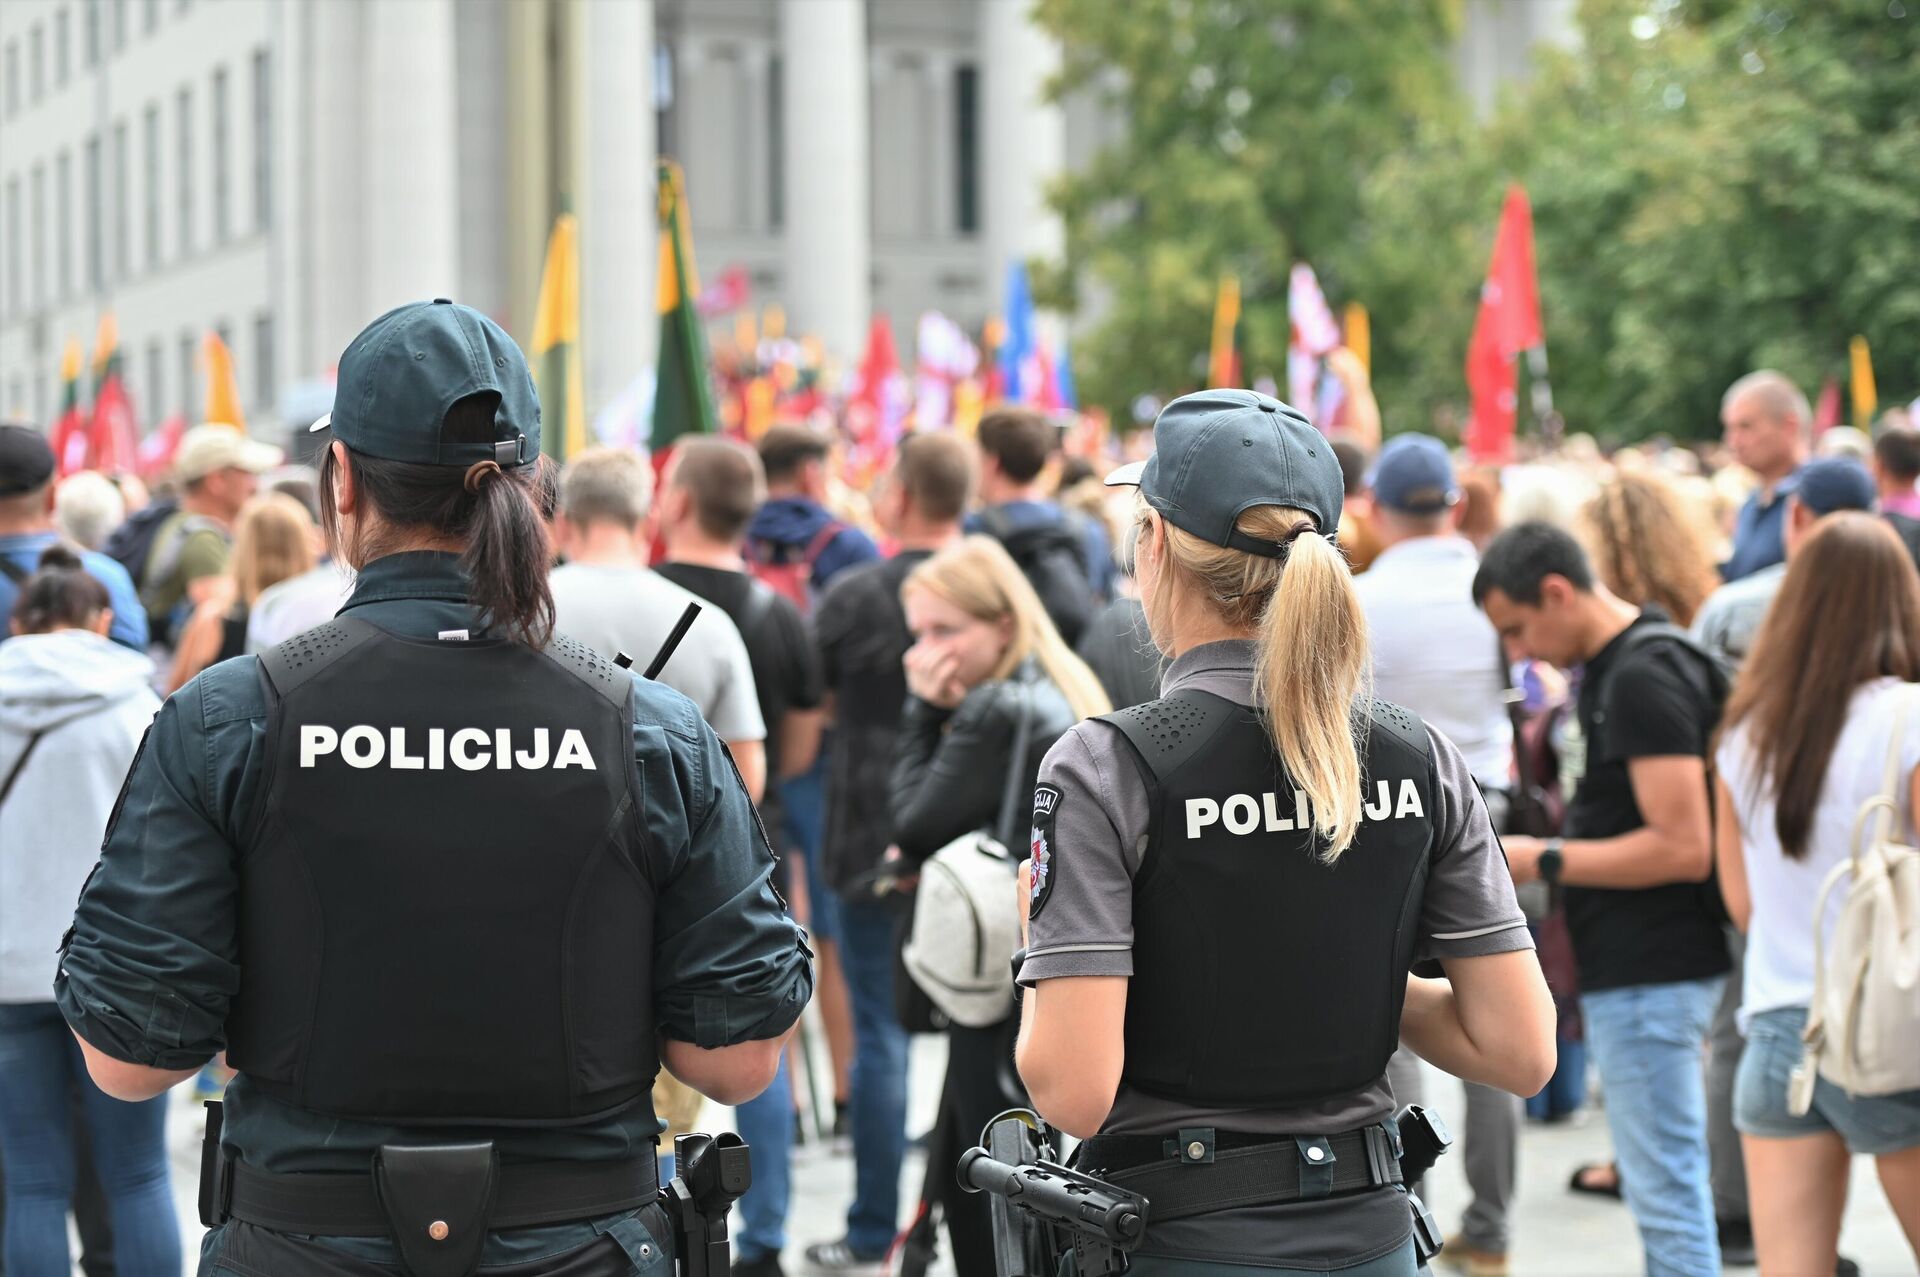 Полиция на митинге 10 августа 2021 в Вильнюсе у здания Сейма Литвы - Sputnik Латвия, 1920, 10.08.2021